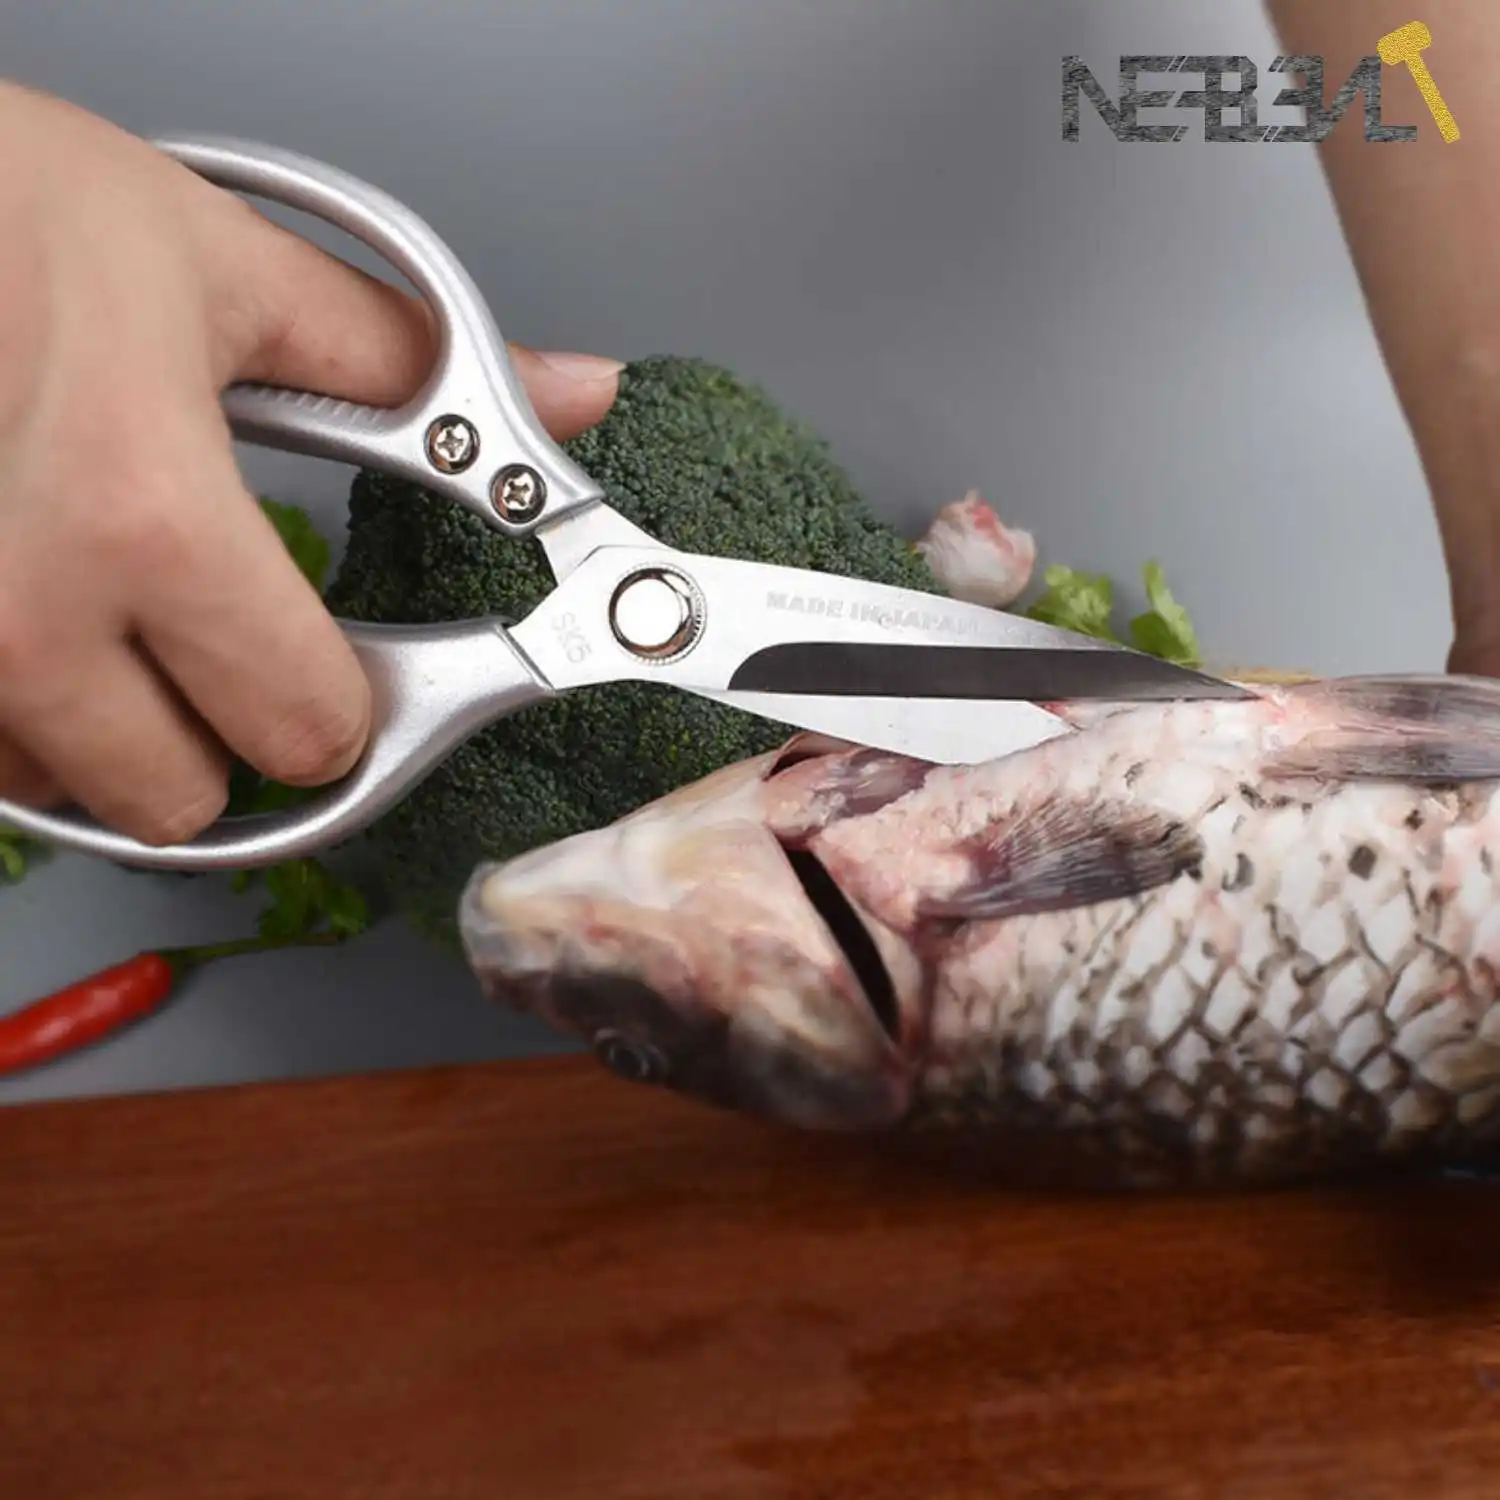 NEFBENLI מטבח, מספריים אל חלד הכבדות מזמרה לחיתוך עוף בשר בקר עופות דגים בשר ירקות מספריים מטרה - 4